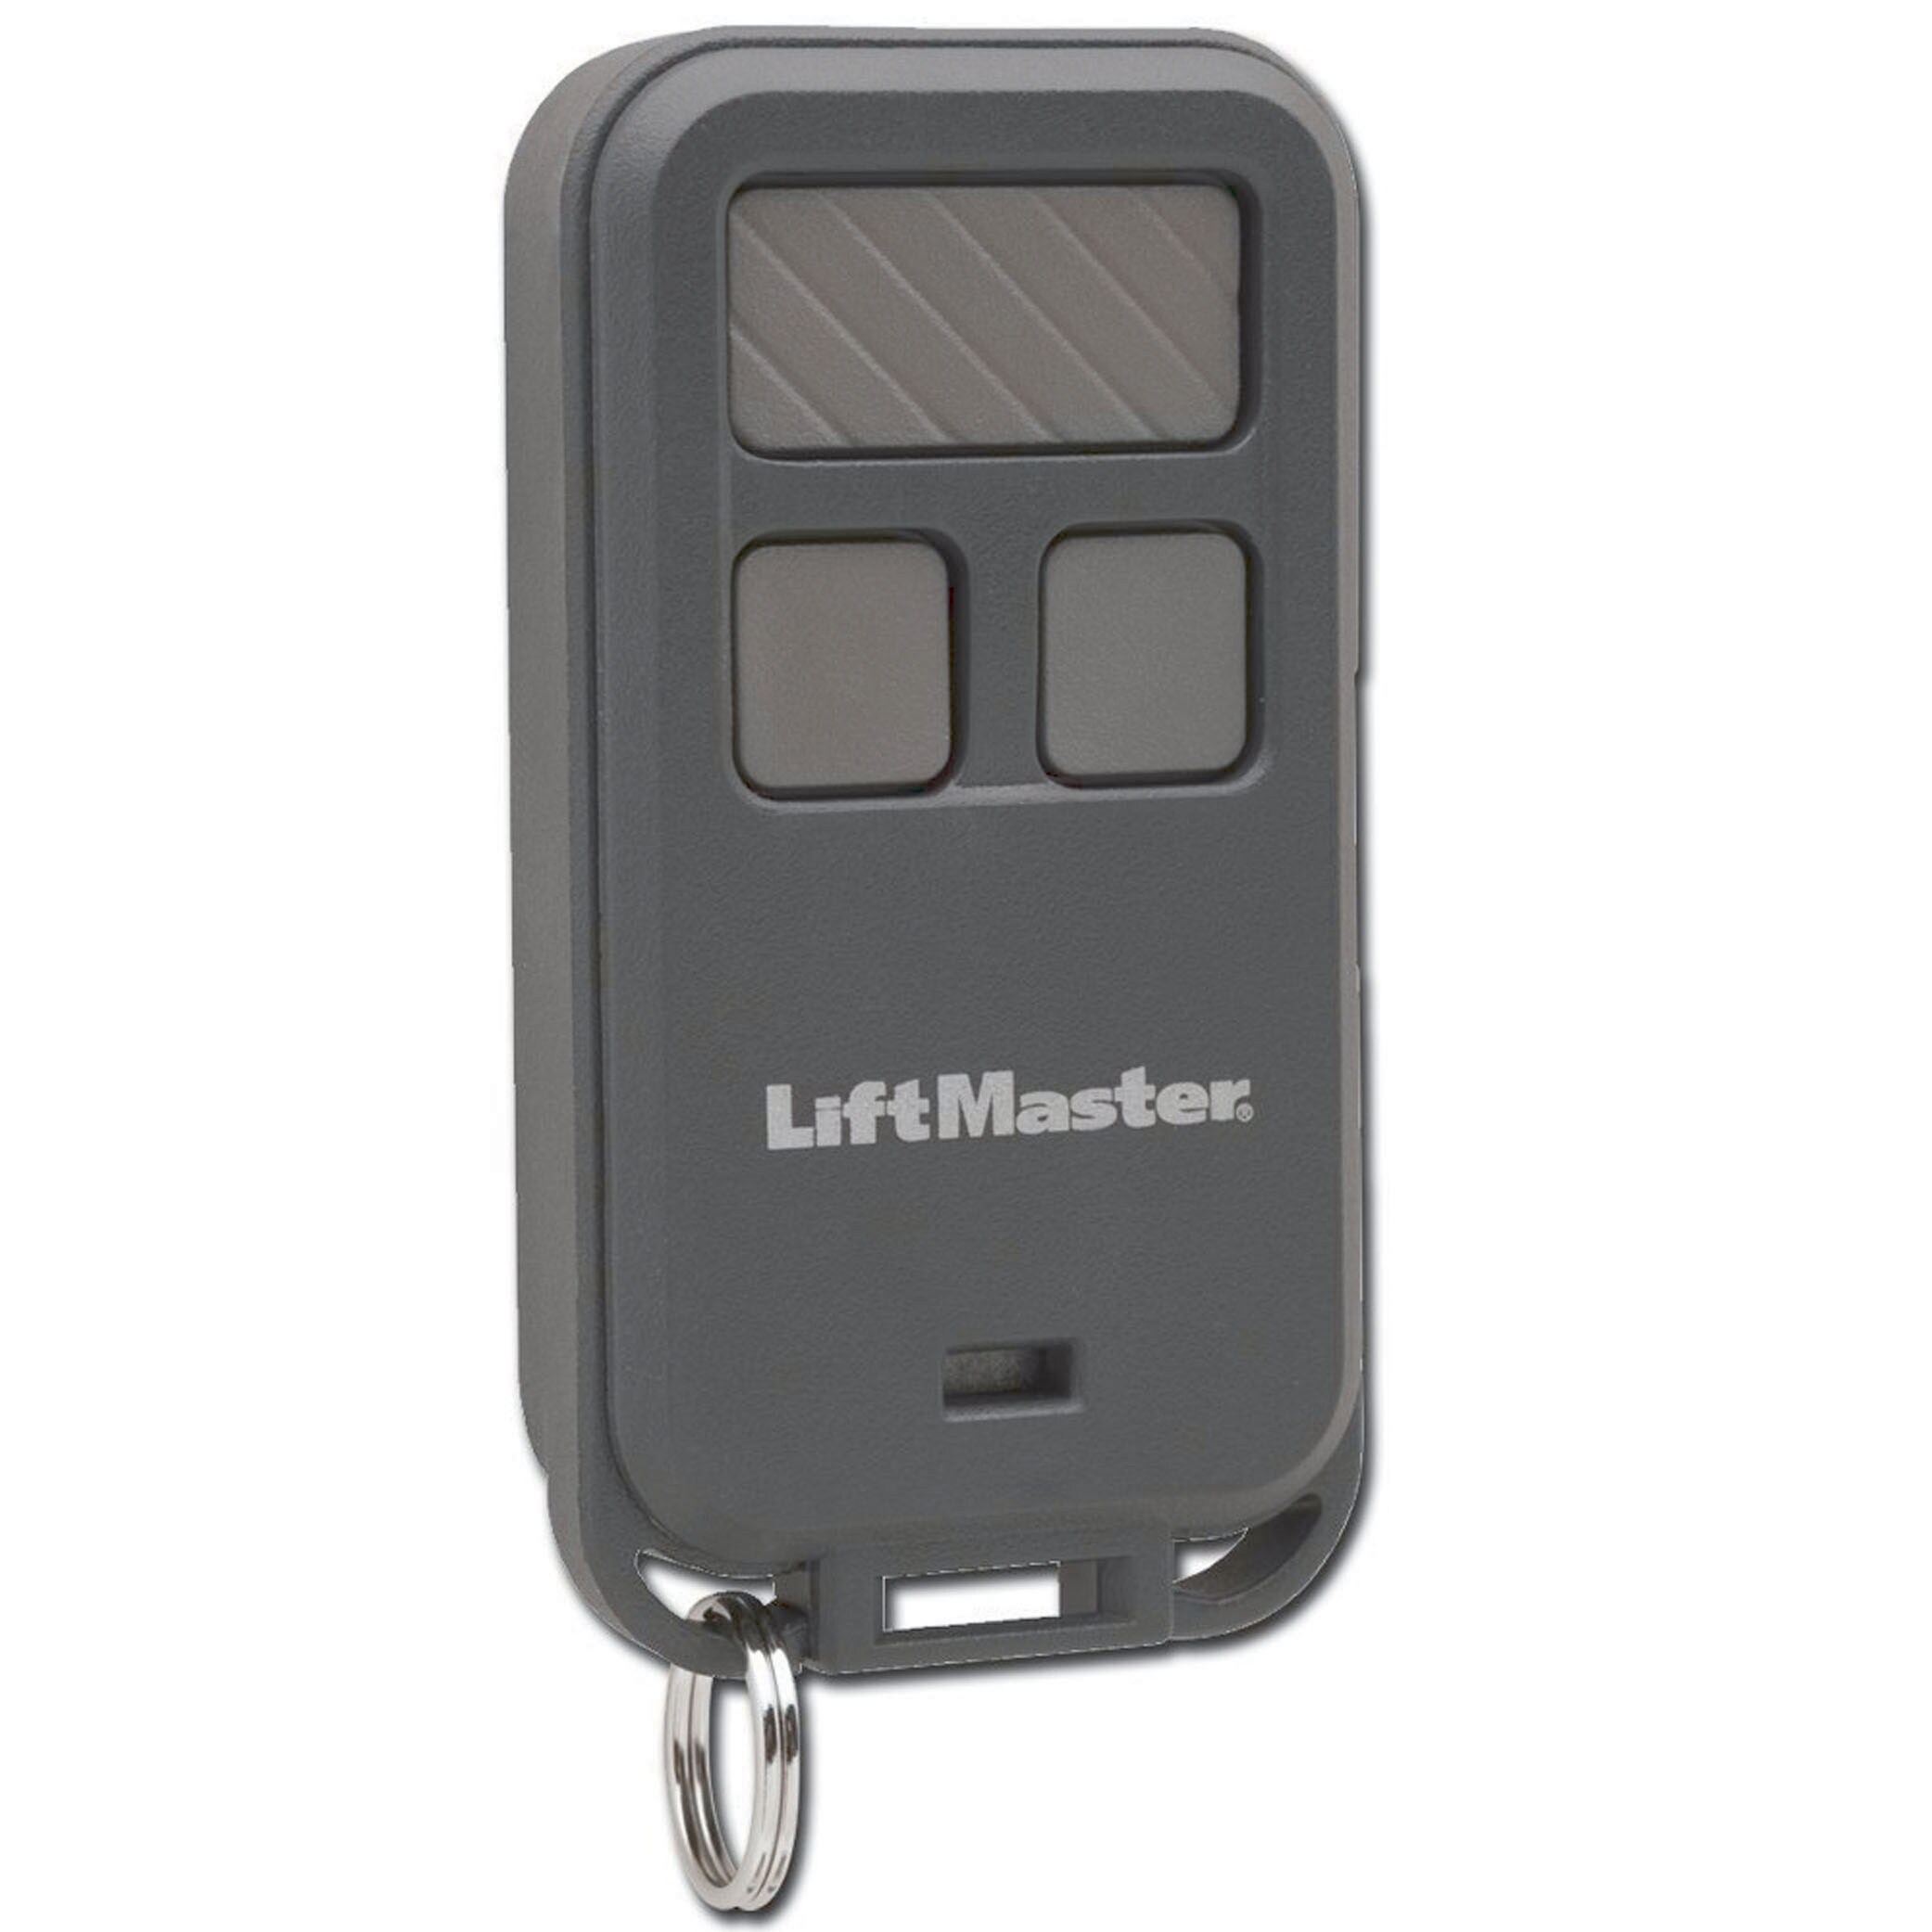 Liftmaster Garage Door Opener Remote Directions | Dandk Organizer